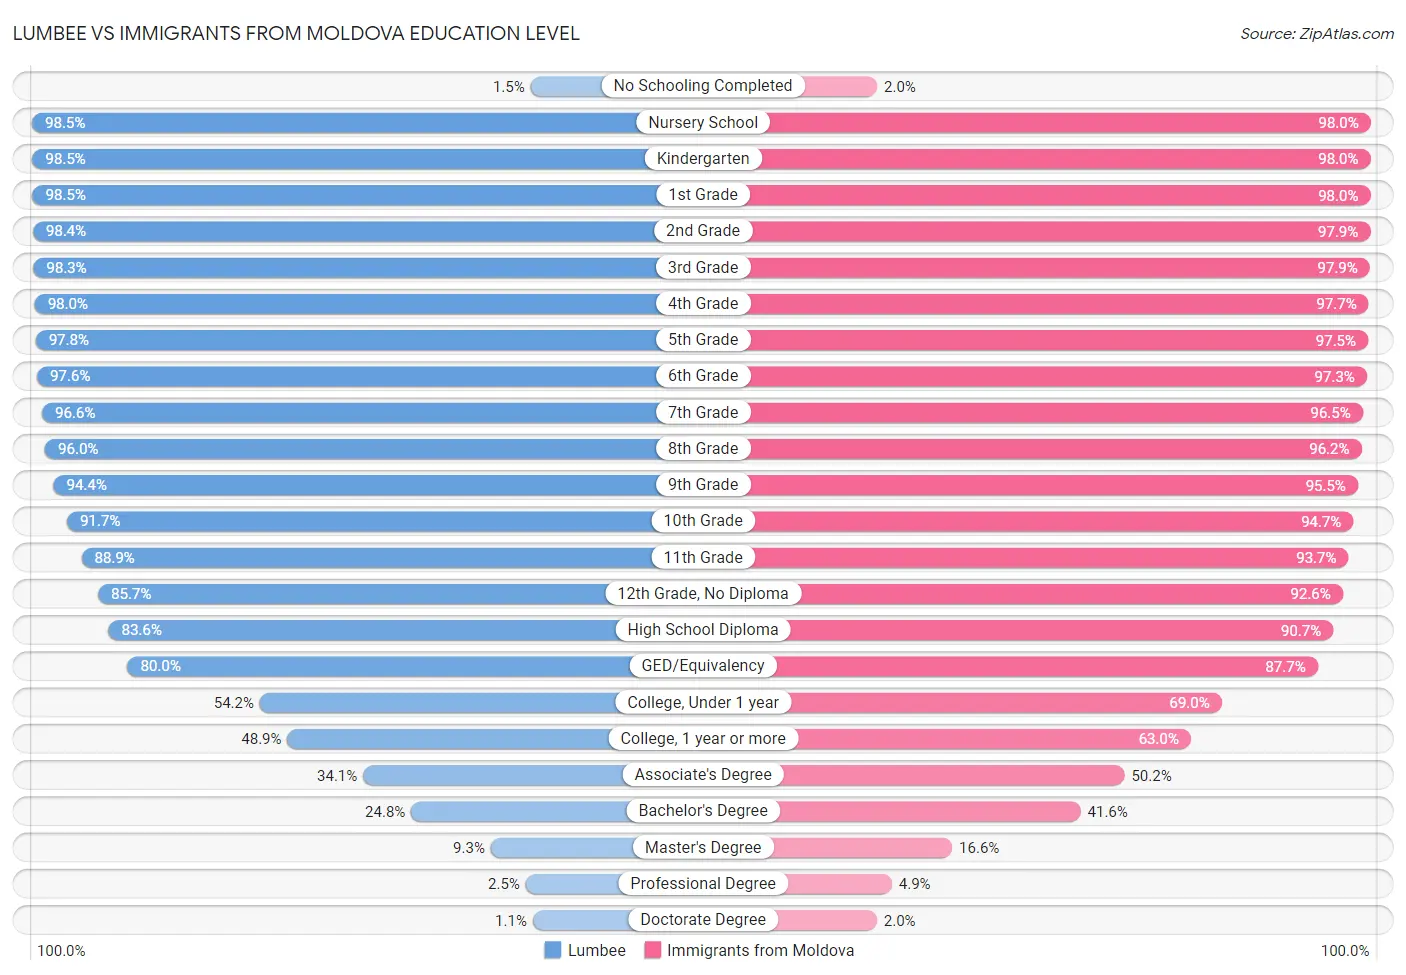 Lumbee vs Immigrants from Moldova Education Level